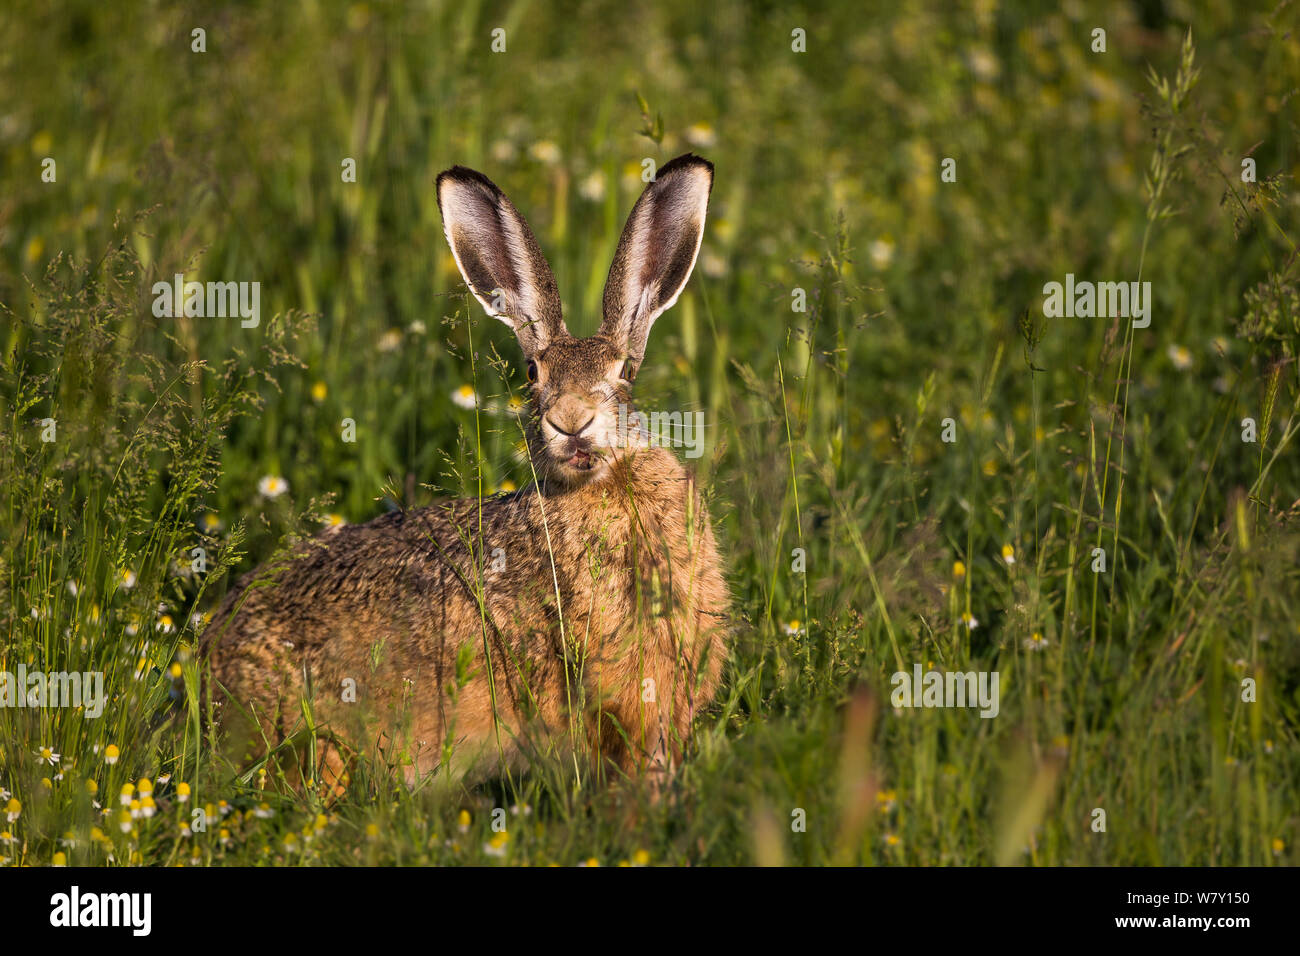 Europäische hare (Lepus europaeus) im Feld, Frankreich, Mai. Stockfoto